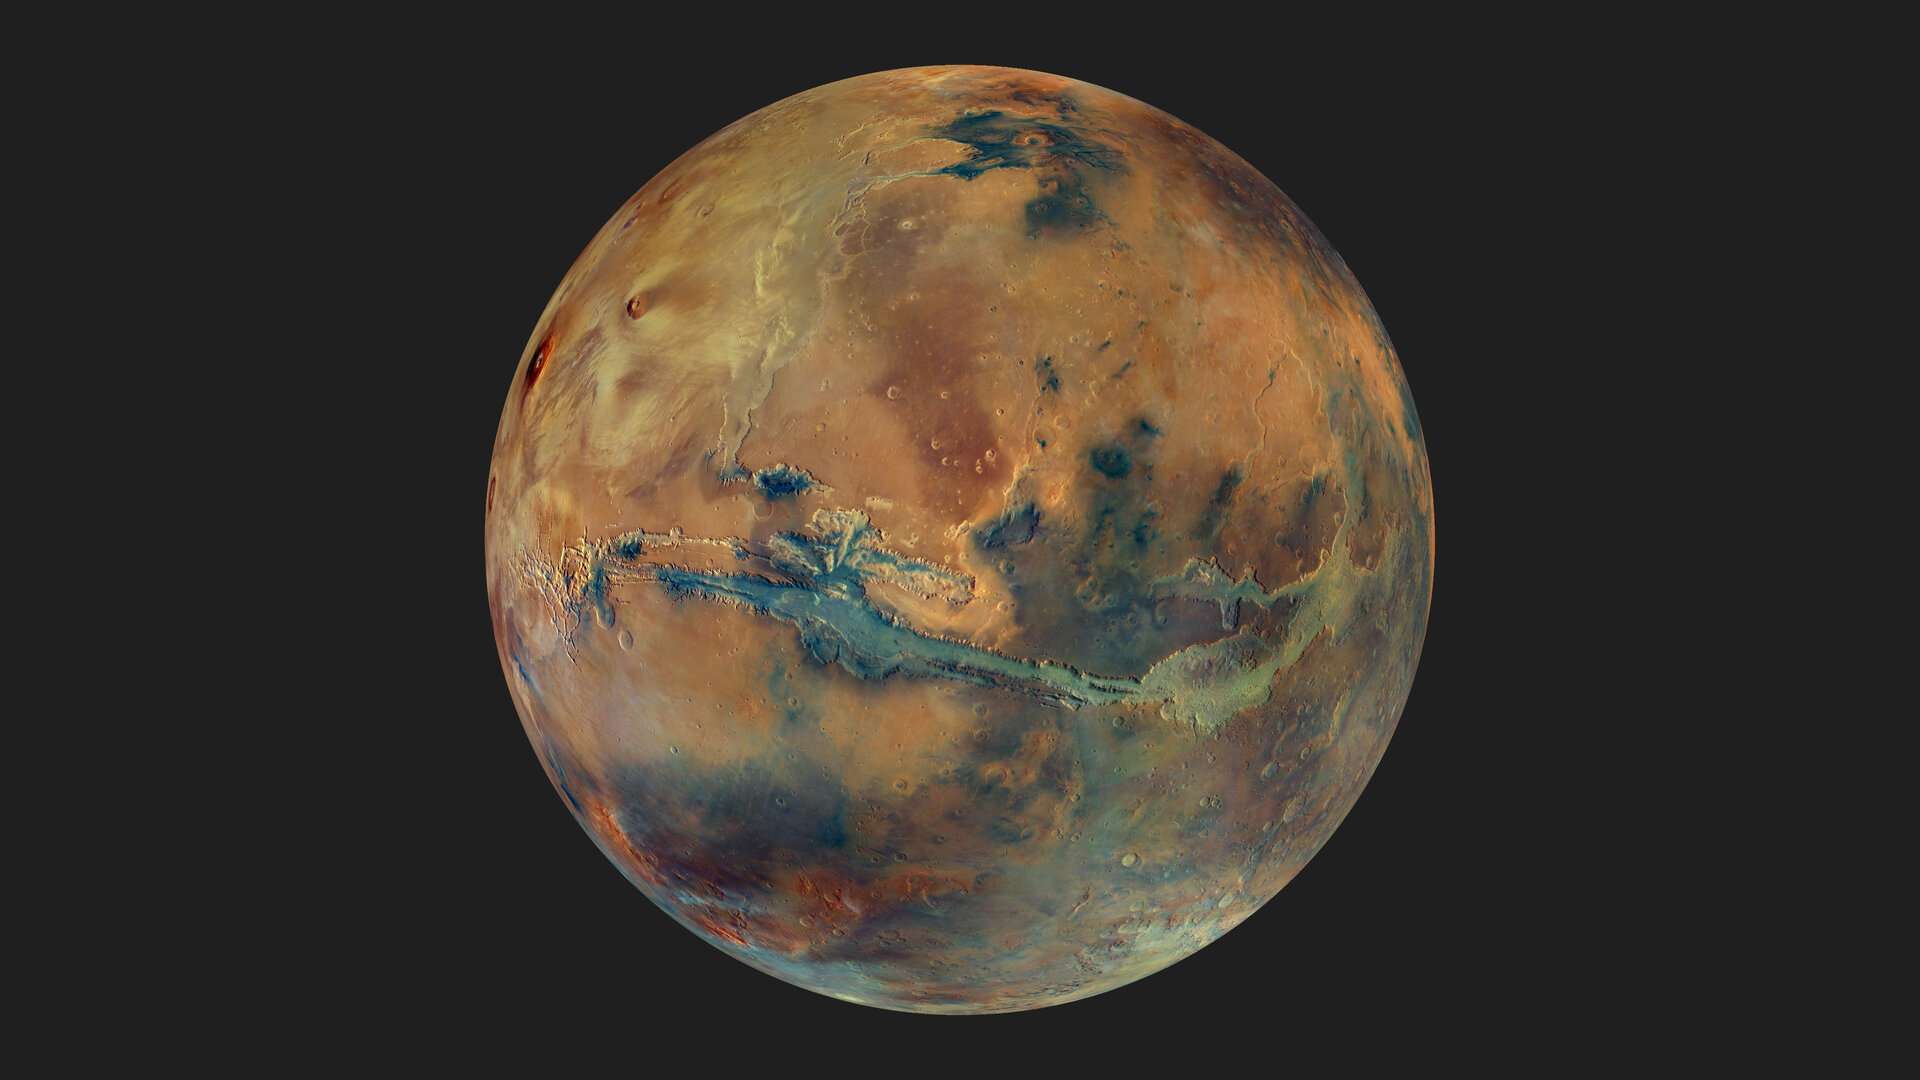 Nesta rica imagem de Marte, o mosaico revela a cor e a composição da superfície do planeta com detalhes espetaculares. Esta é a vista simulada a partir de um ponto de vista 2,5 mil km acima do colossal sistema de desfiladeiros chamado de Valles Marineris. As áreas em tons mais escuros de cinza representam areias basálticas preto-acinzentadas de origem vulcânica. Já as manchas mais claras mostram minerais argilosos e sulfatos. A grande cicatriz na face do planeta mostra a extensão dos Valles Marineris